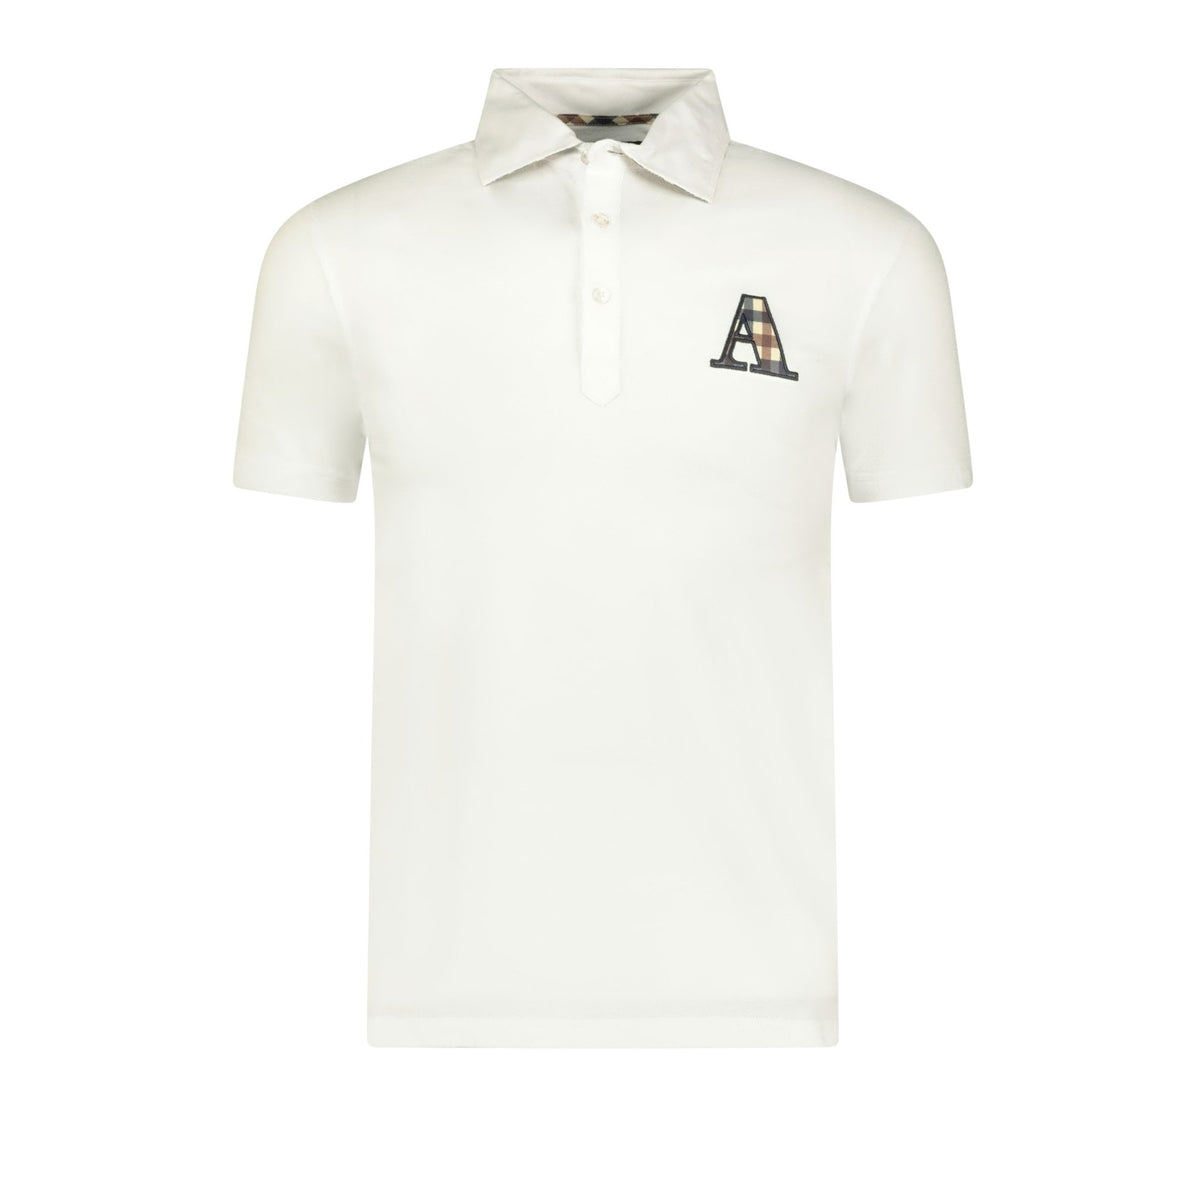 Aquascutum A Check Logo T-Shirt White | Boinclo ltd | Outlet Sale